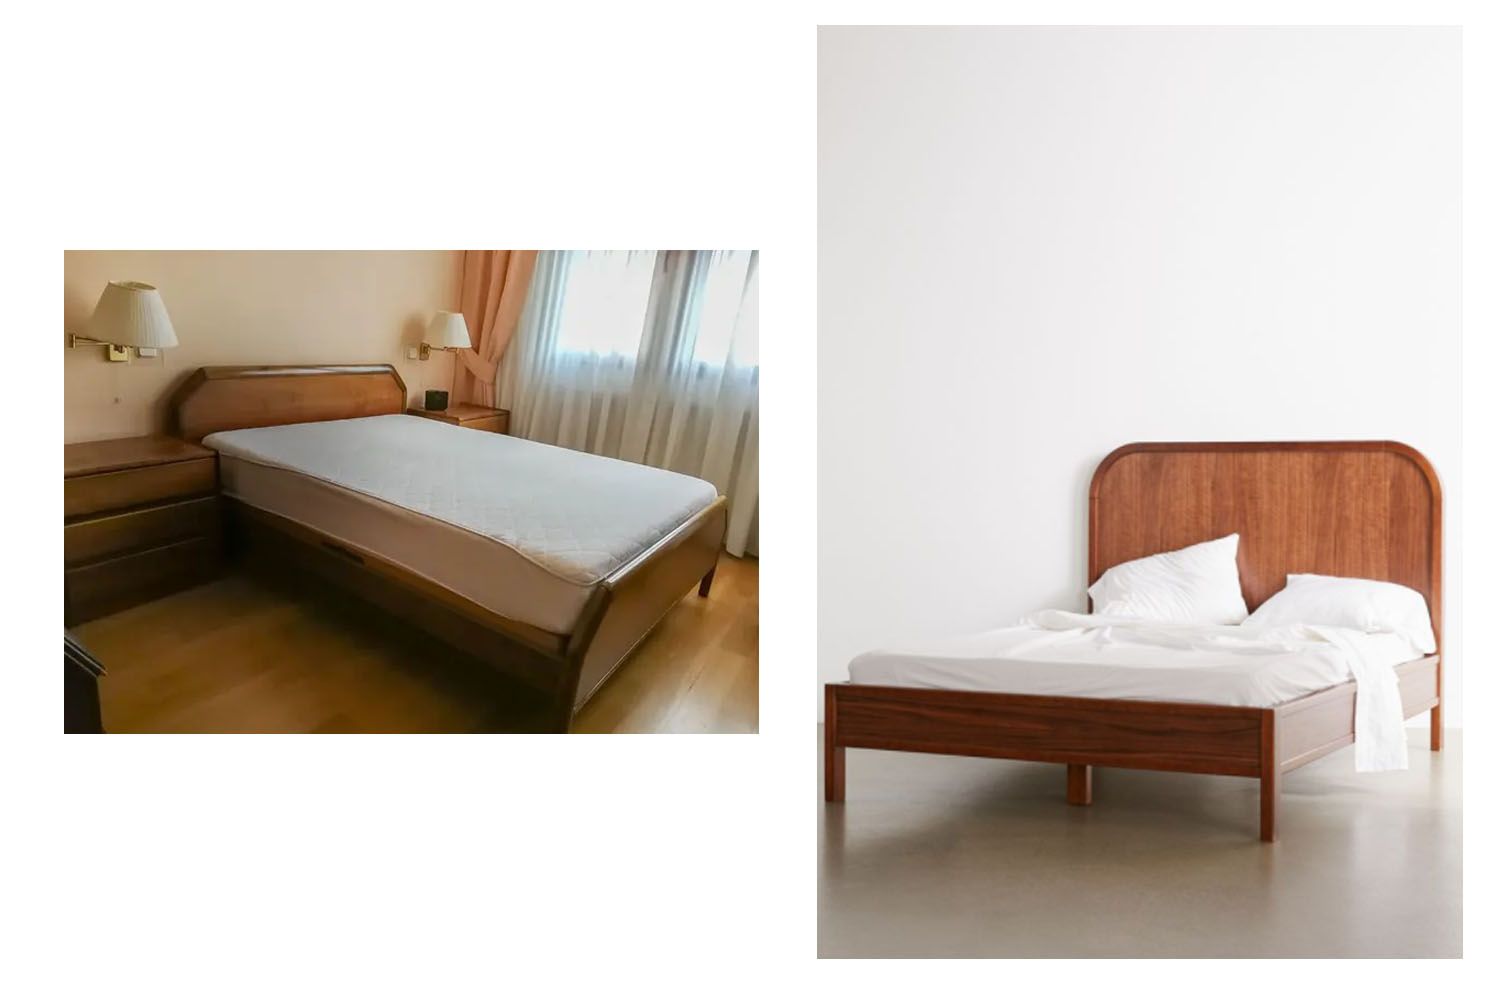 Dos camas, la primera de Wallapop y la segunda de Urban Outfitters / WALLAPOP-URBAN OUTFITTERS